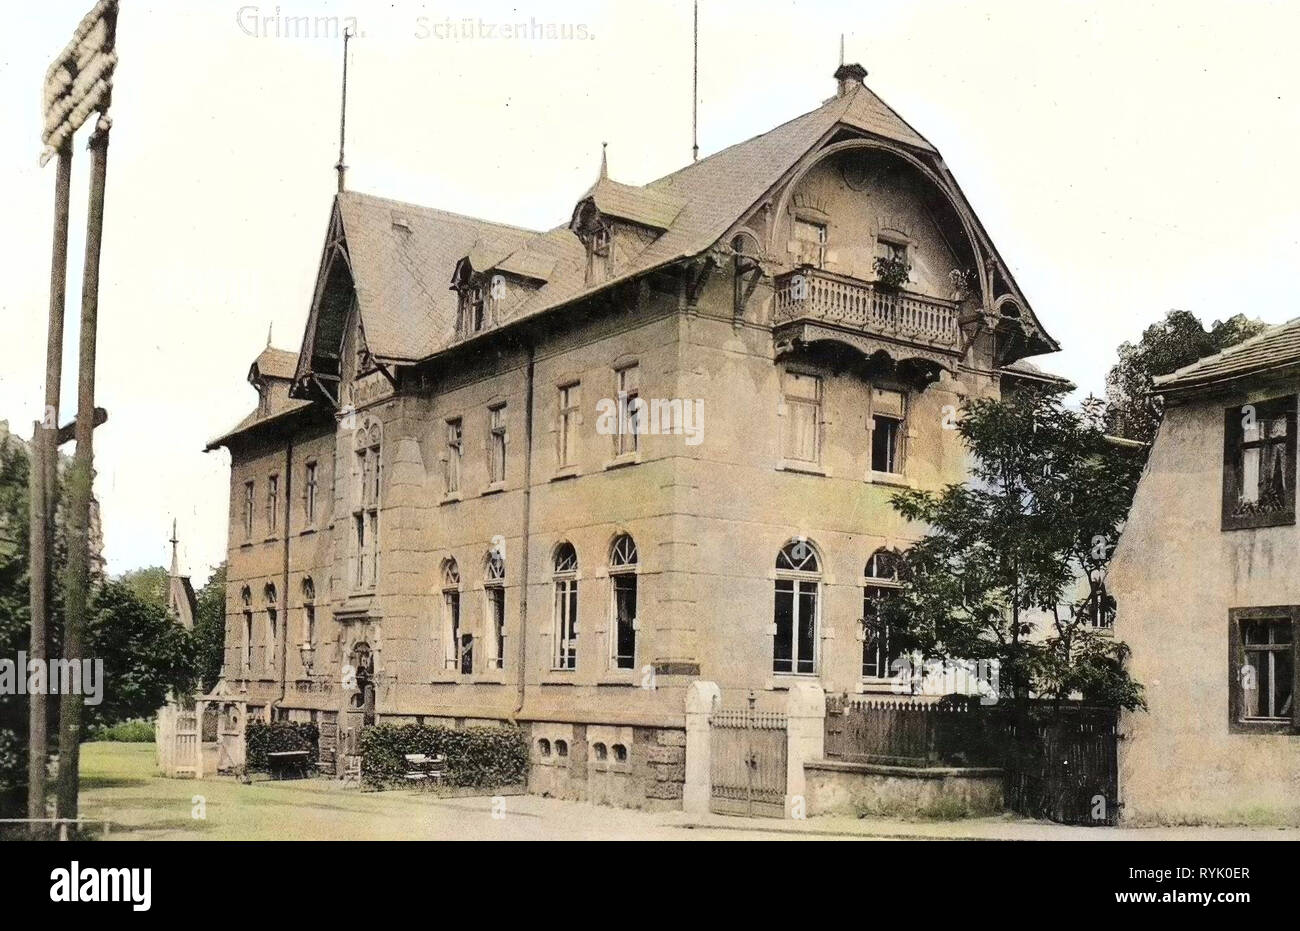 Schützenhaus, Buildings in Grimma, 1913, Landkreis Leipzig, Grimma, Germany Stock Photo